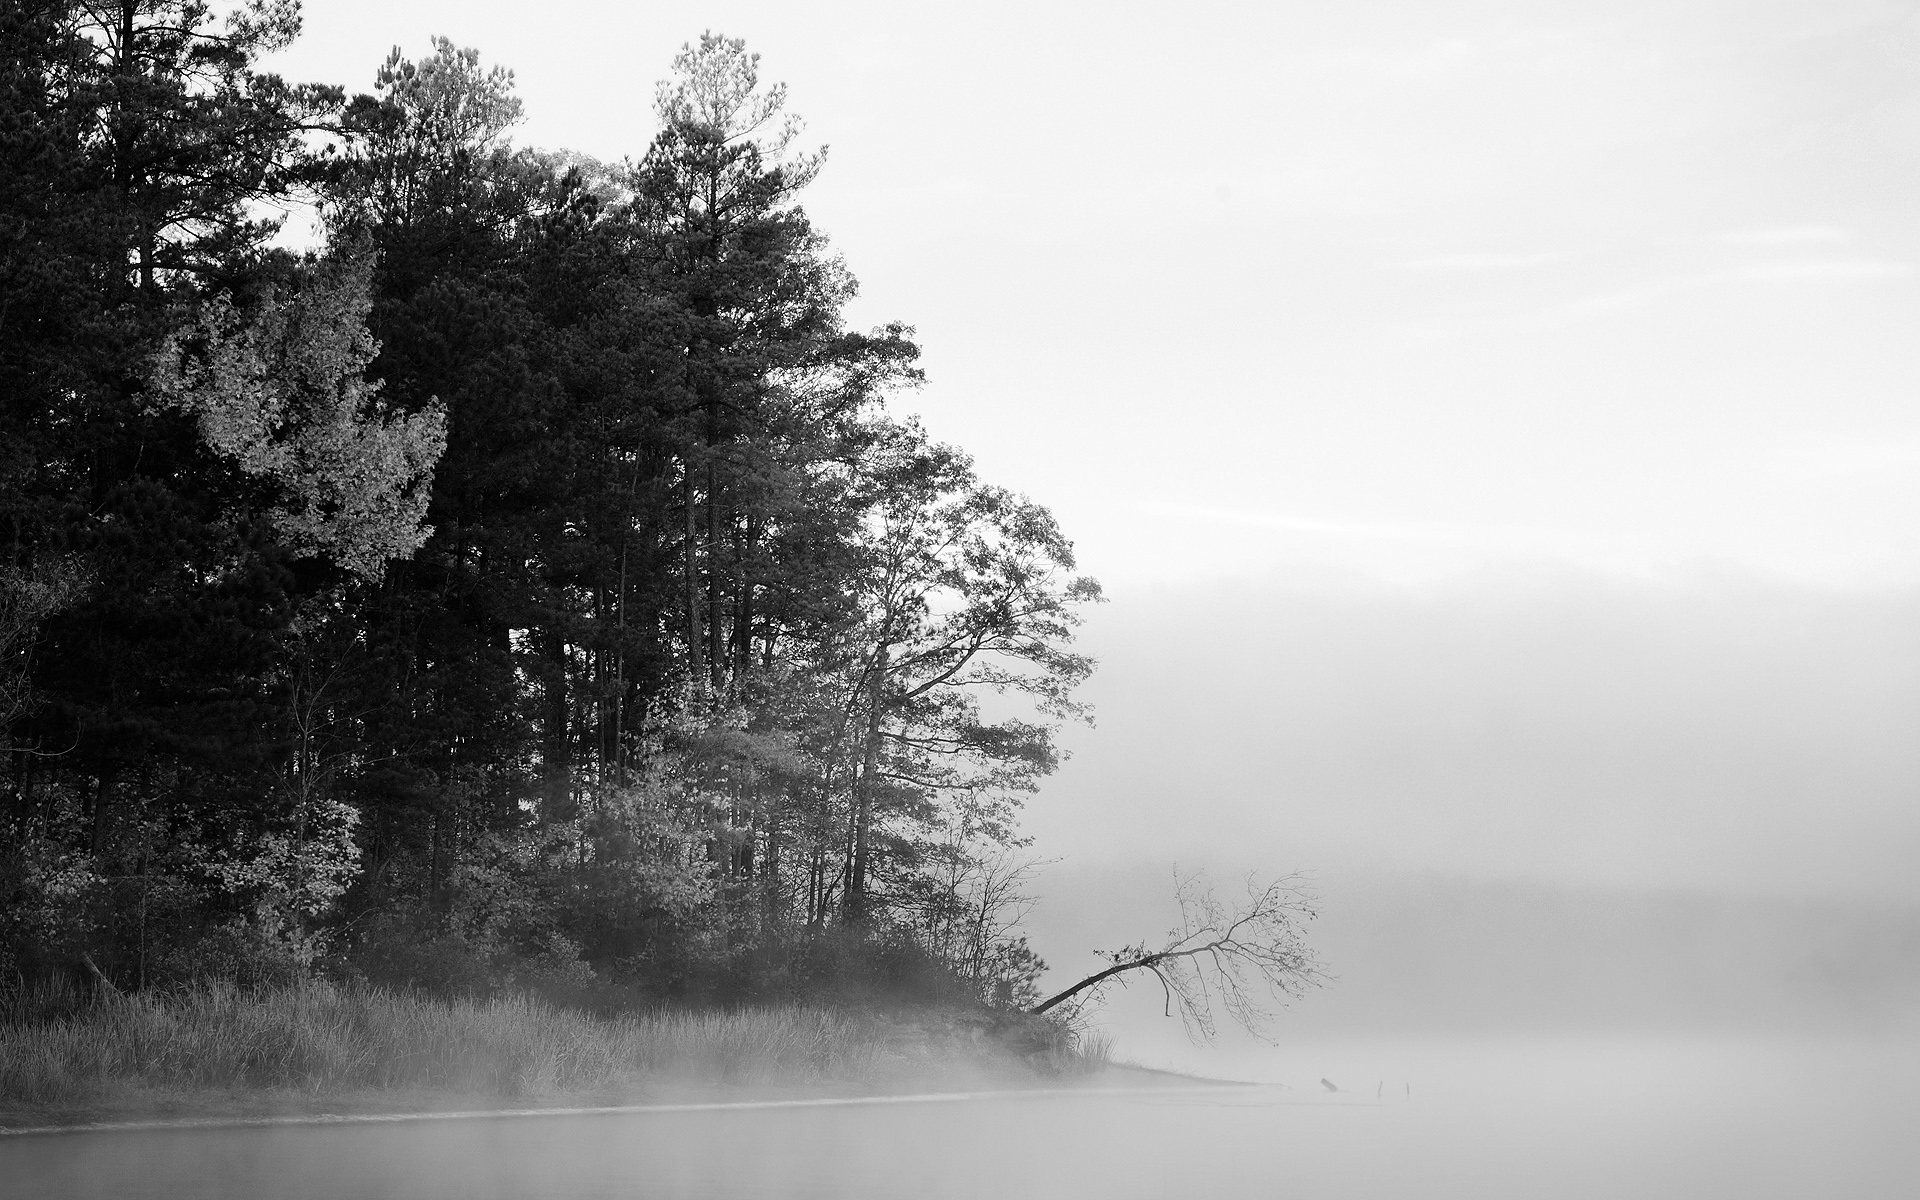 trees, fog, grayscale - desktop wallpaper